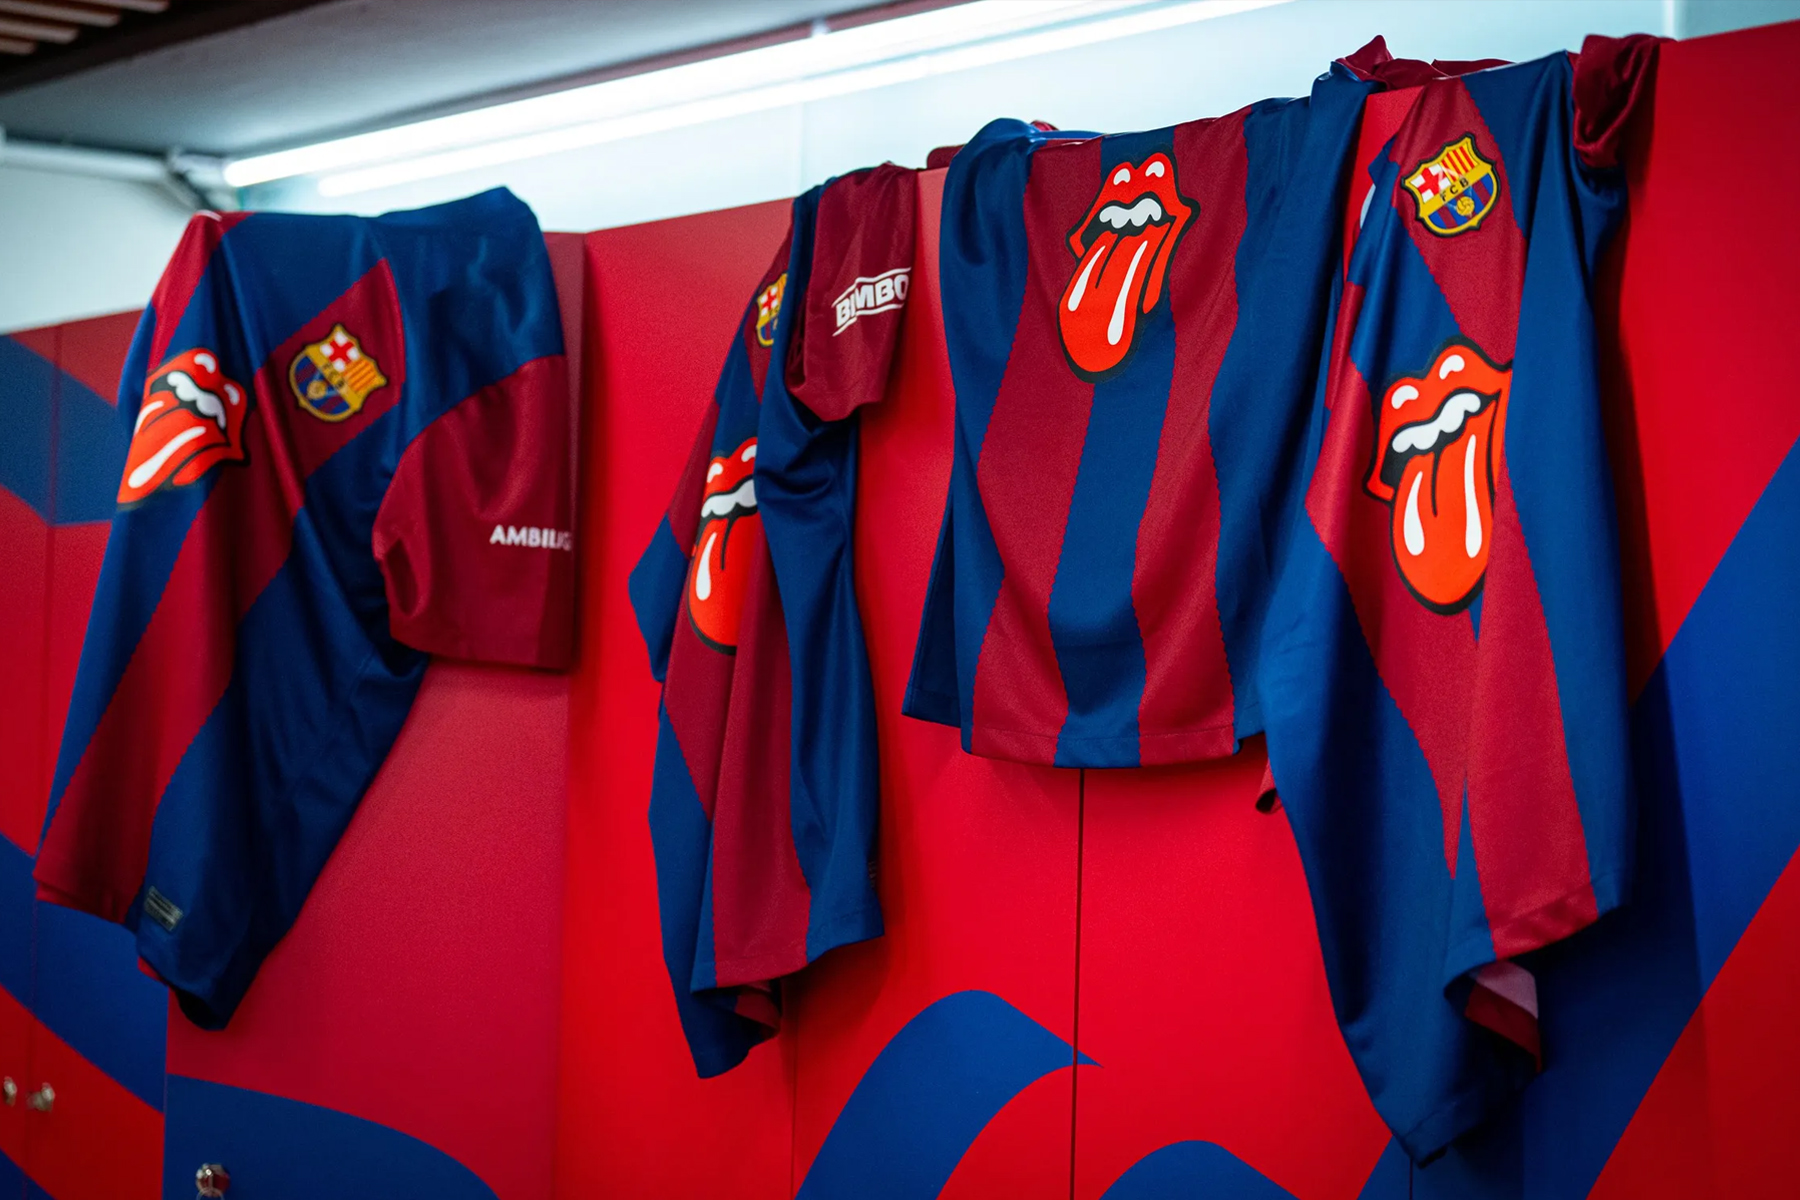 Barcellona Rolling Stones Clasico maglia FC Barcelona